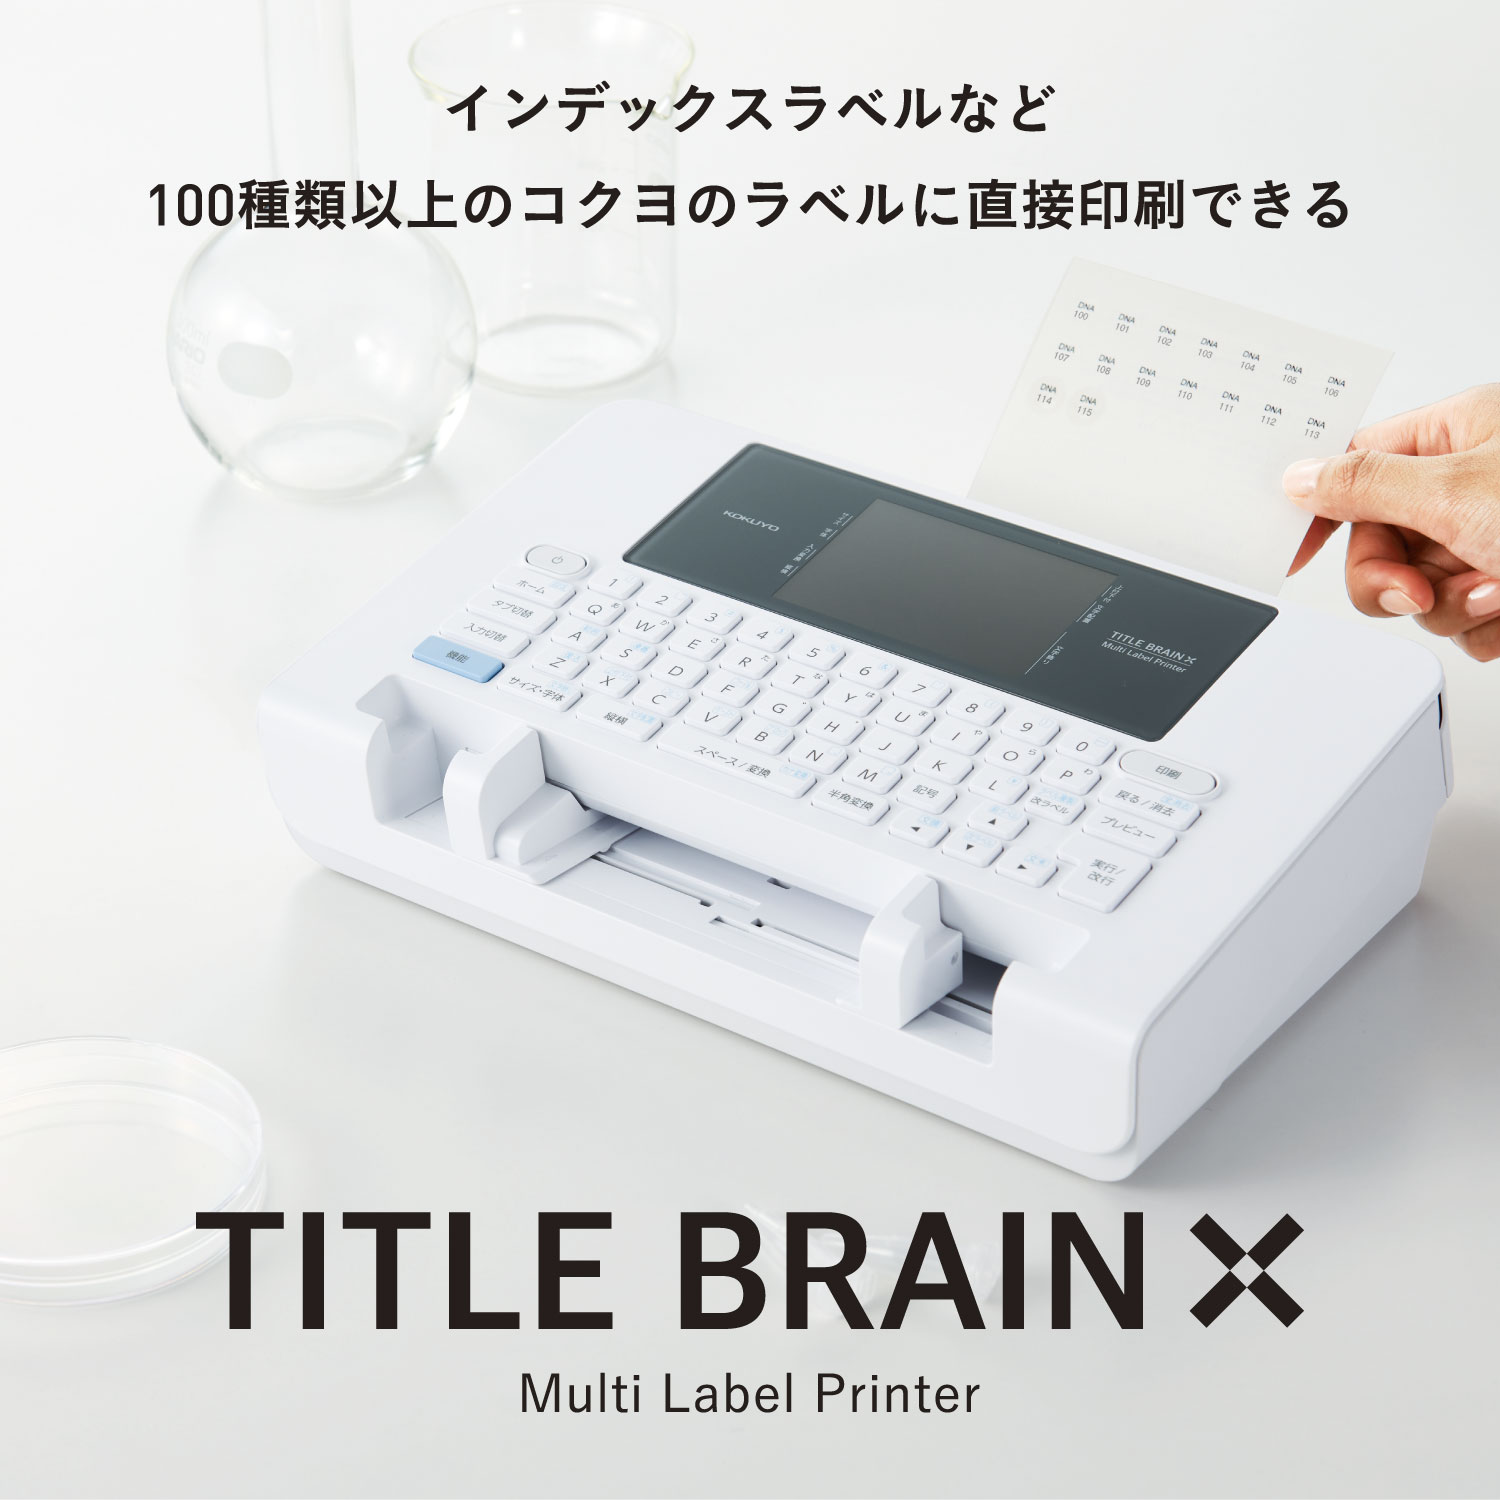 Multi Label Printer / TITLE BRAIN X